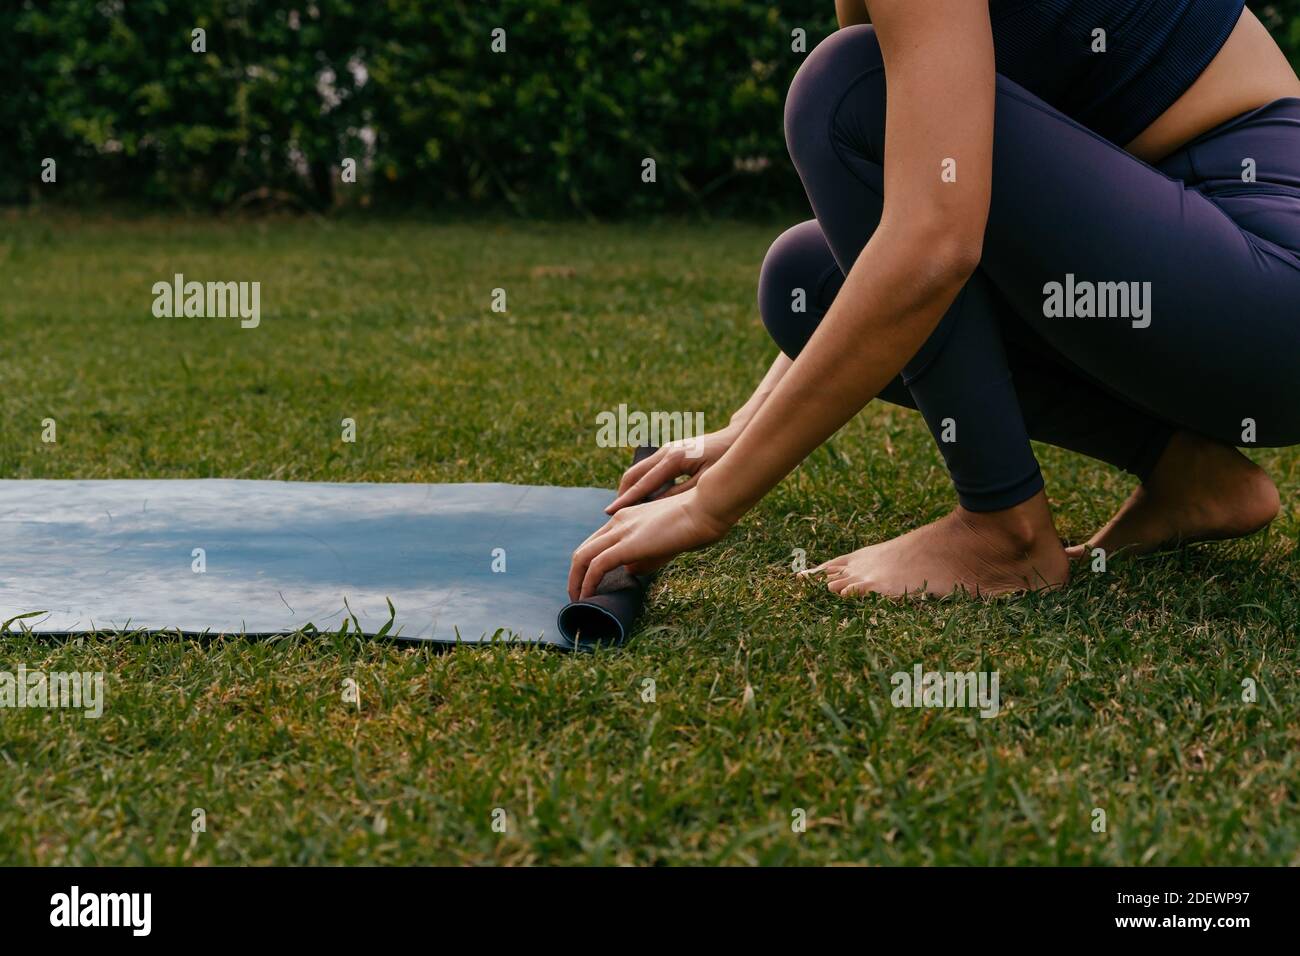 Praticante di yoga femminile a piedi nudi che srotola il tappetino sull'erba mentre si prepara per lezioni di yoga in cortile Foto Stock